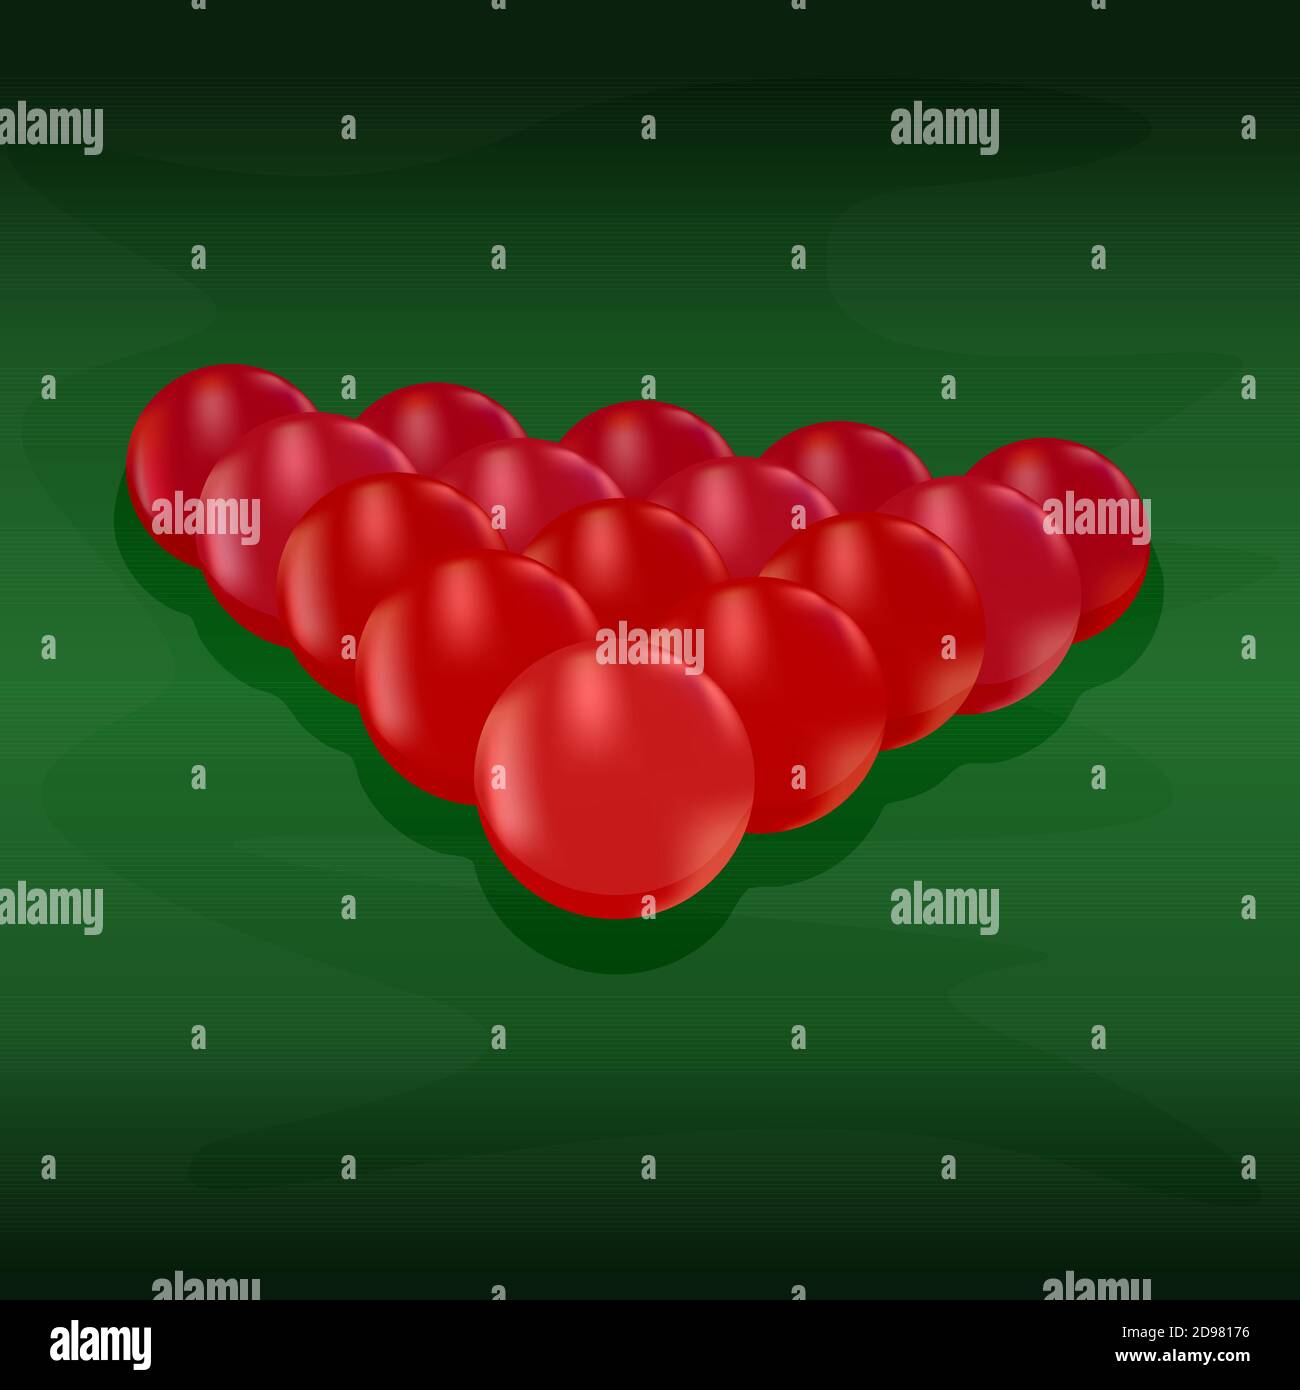 Jeu de boules de billard brillantes. Boules de snooker rouges disposées dans un triangle sur table verte.Billiard table vue de face boules pour le jeu de sport de la salle de billard.vecteur de stock Illustration de Vecteur